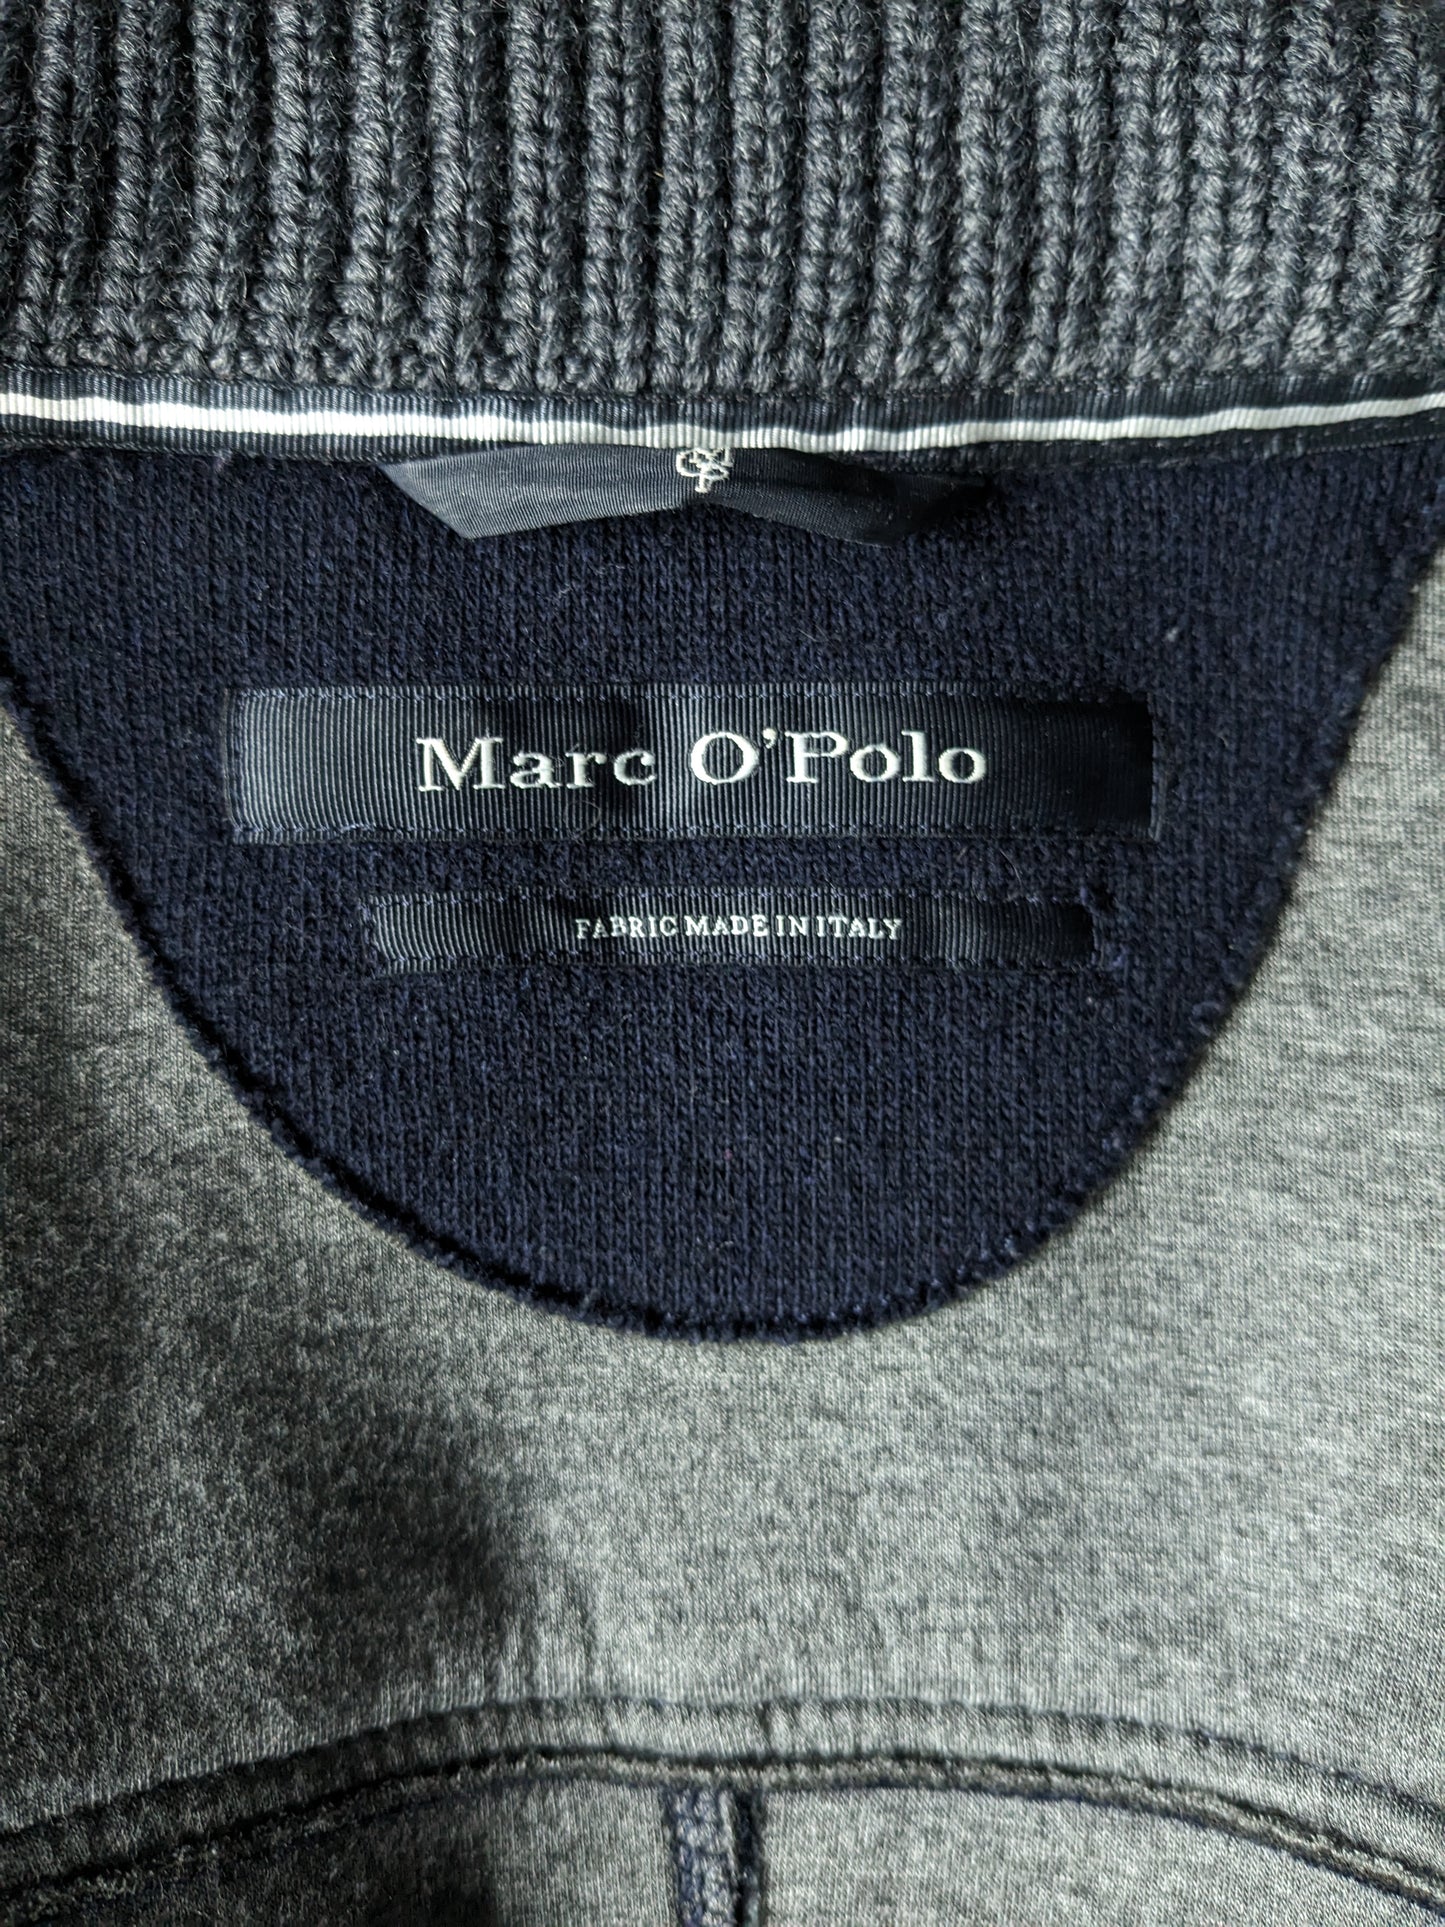 Marc O'polo halflange Wollen tussen jas met knopen. Donker Blauw gekleurd. Maat 50 / M.